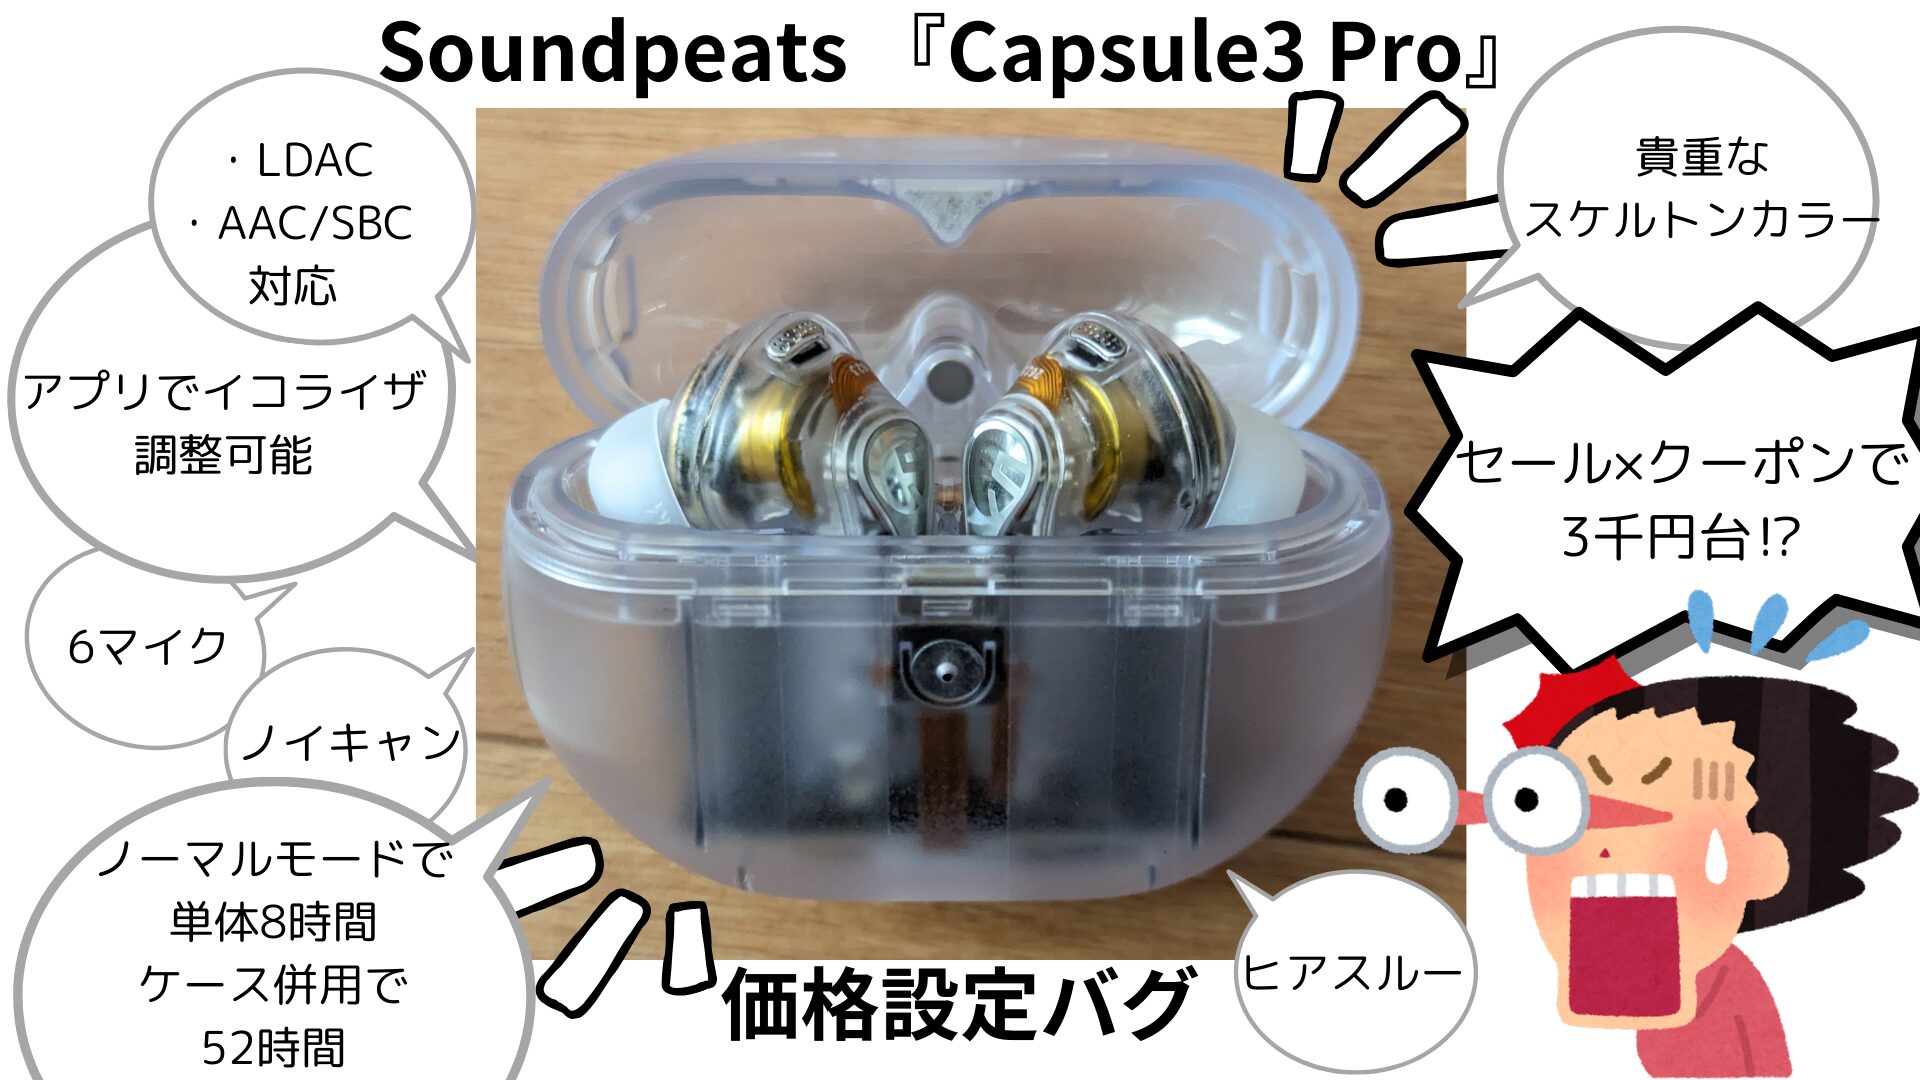 Soundpeats Capsule3 Pro